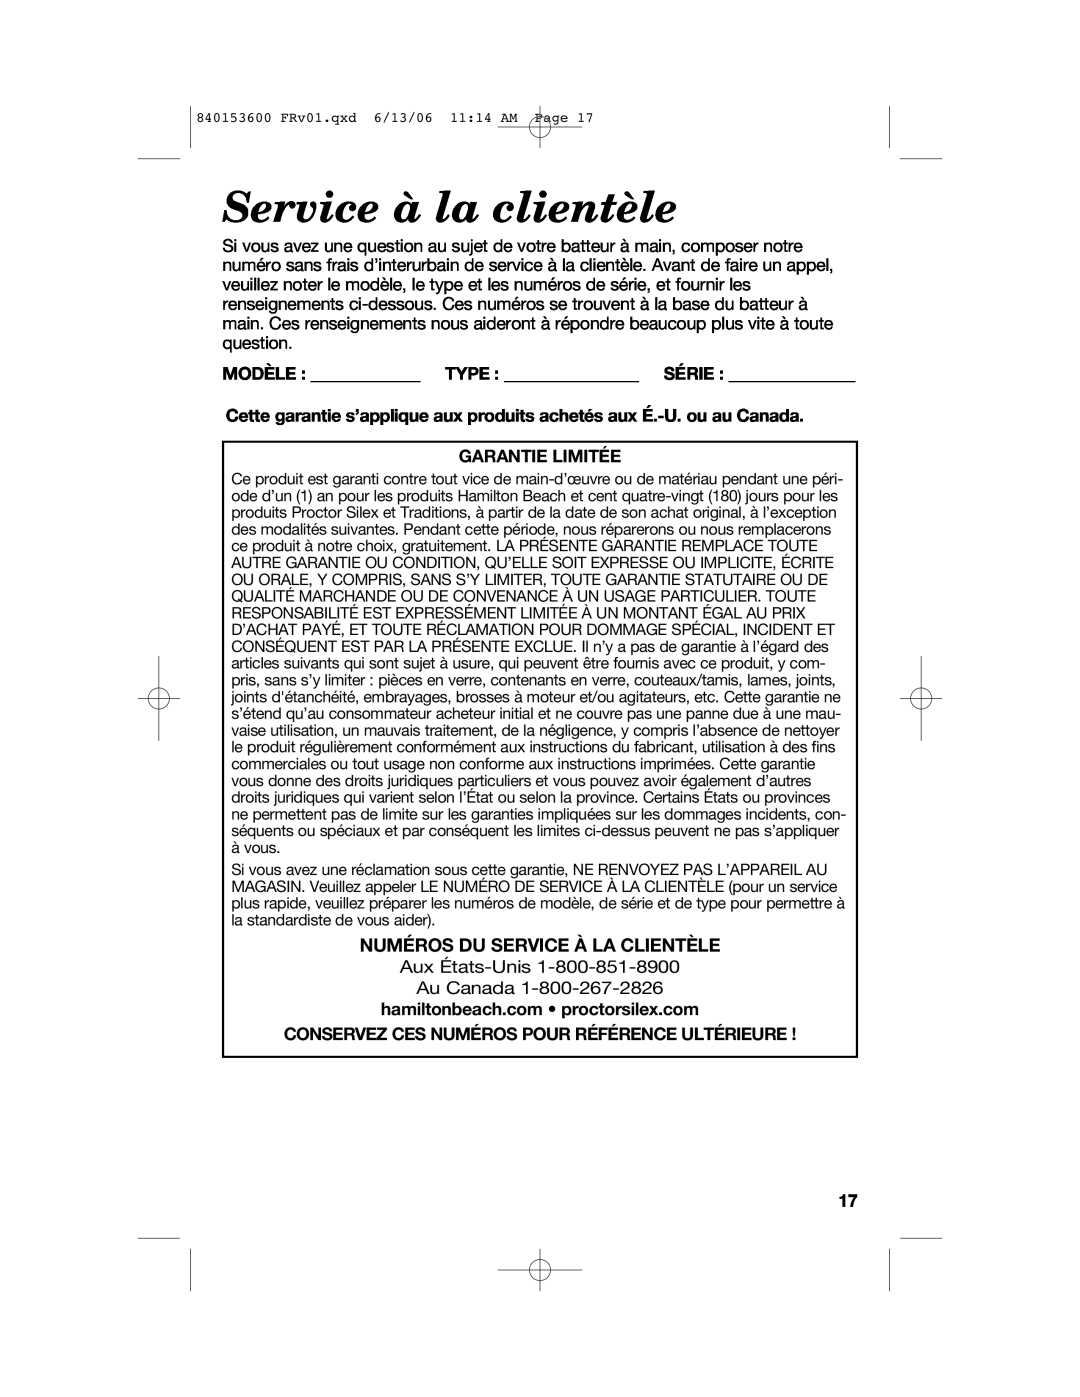 Hamilton Beach 62660 manual Service à la clientèle, Numéros Du Service À La Clientèle, Garantie Limitée 